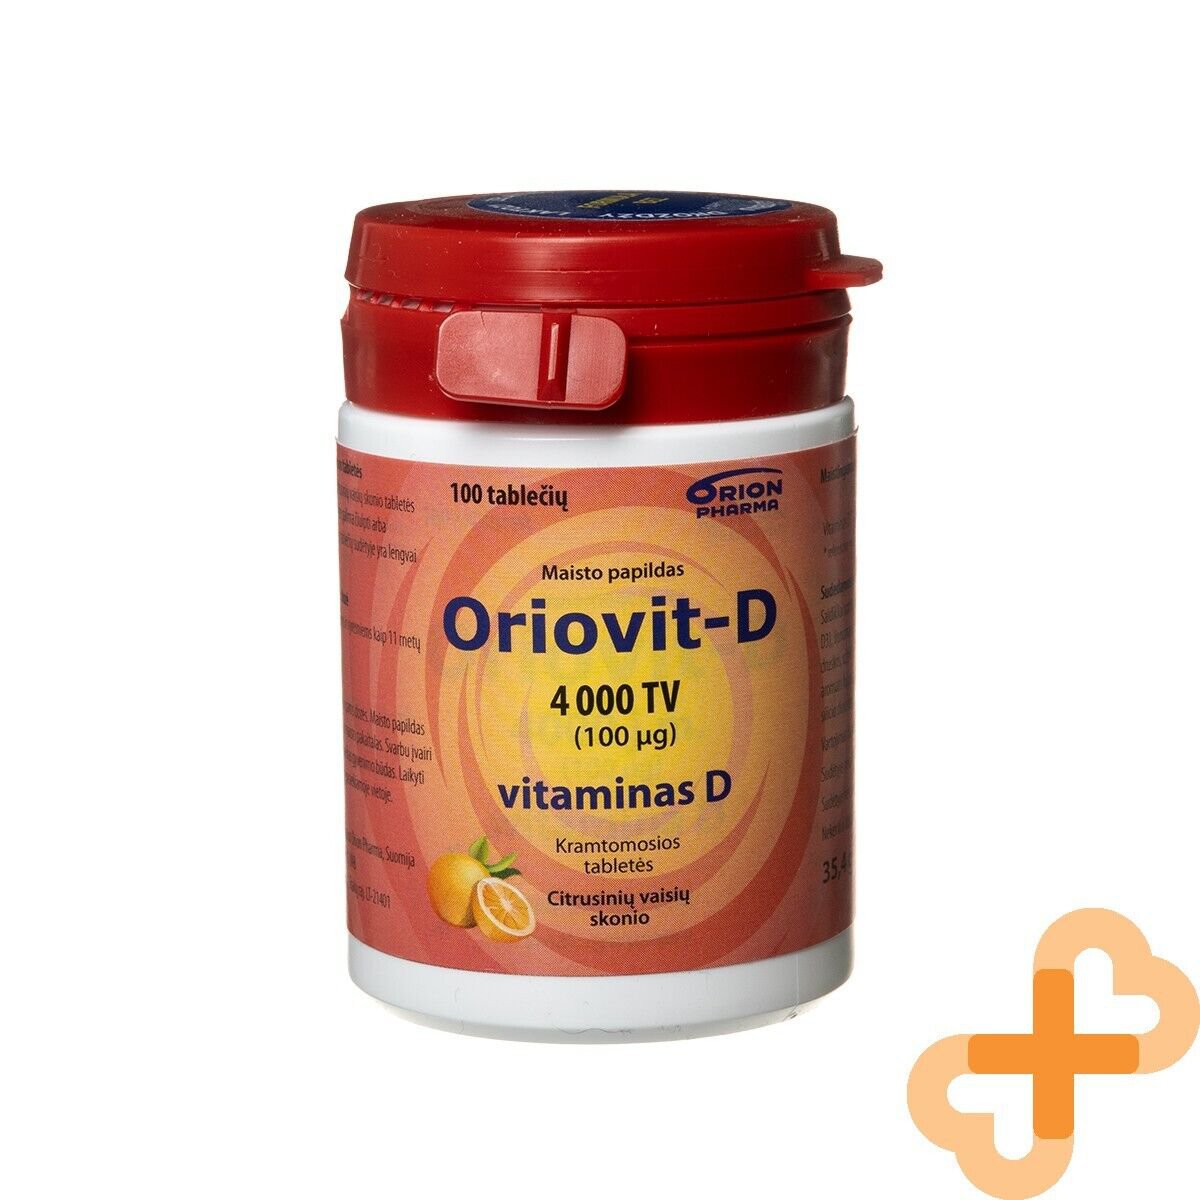 ORIOVIT-D 100 Âµg 4000 IU Vitamin D 100 Chewable Tablets Citrus Flavor Supplement